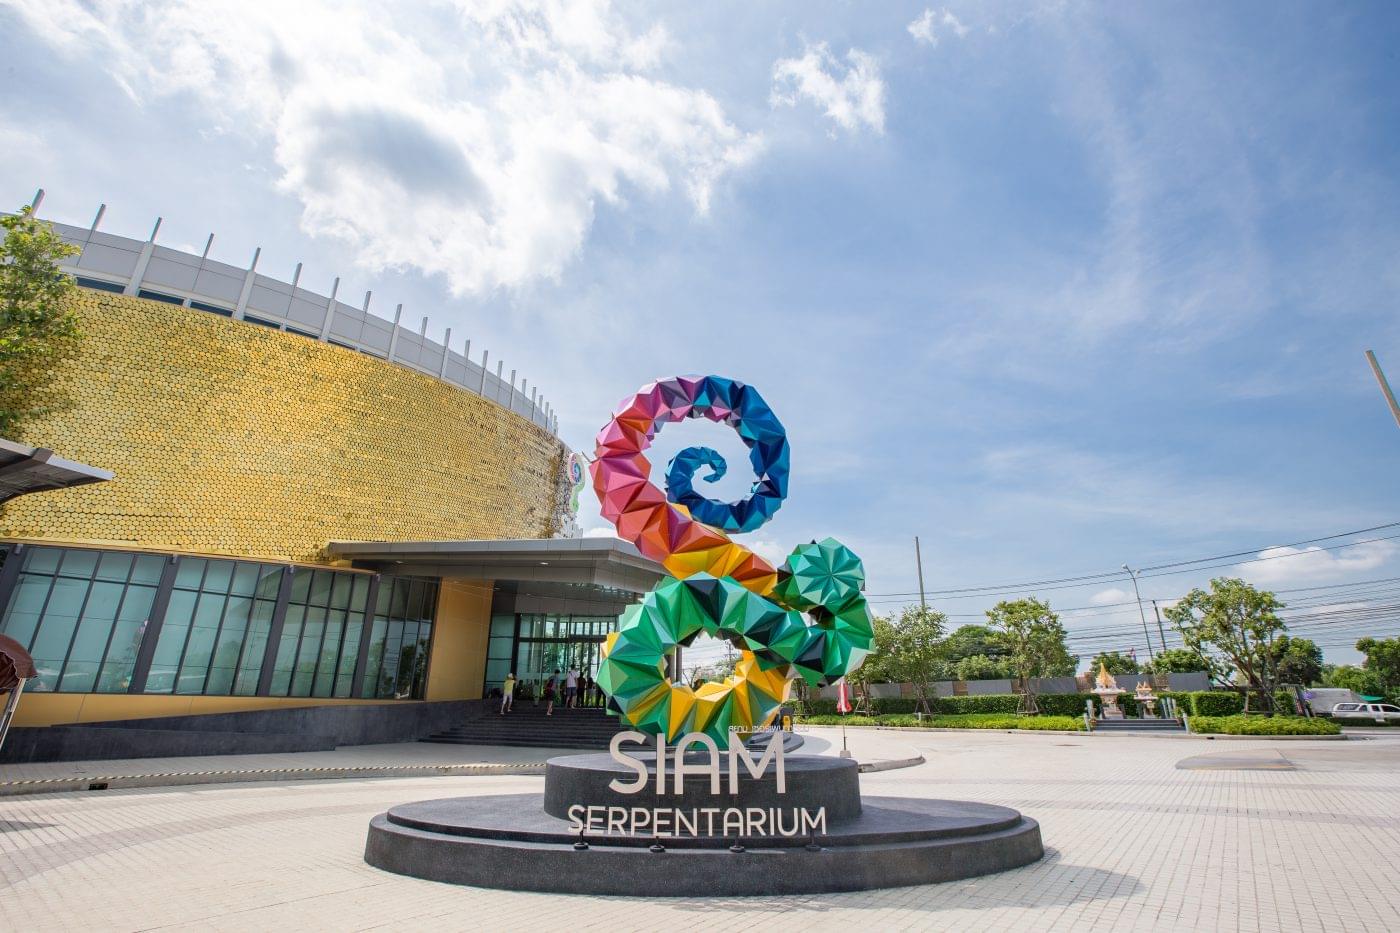 Siam Serpentarium Overview